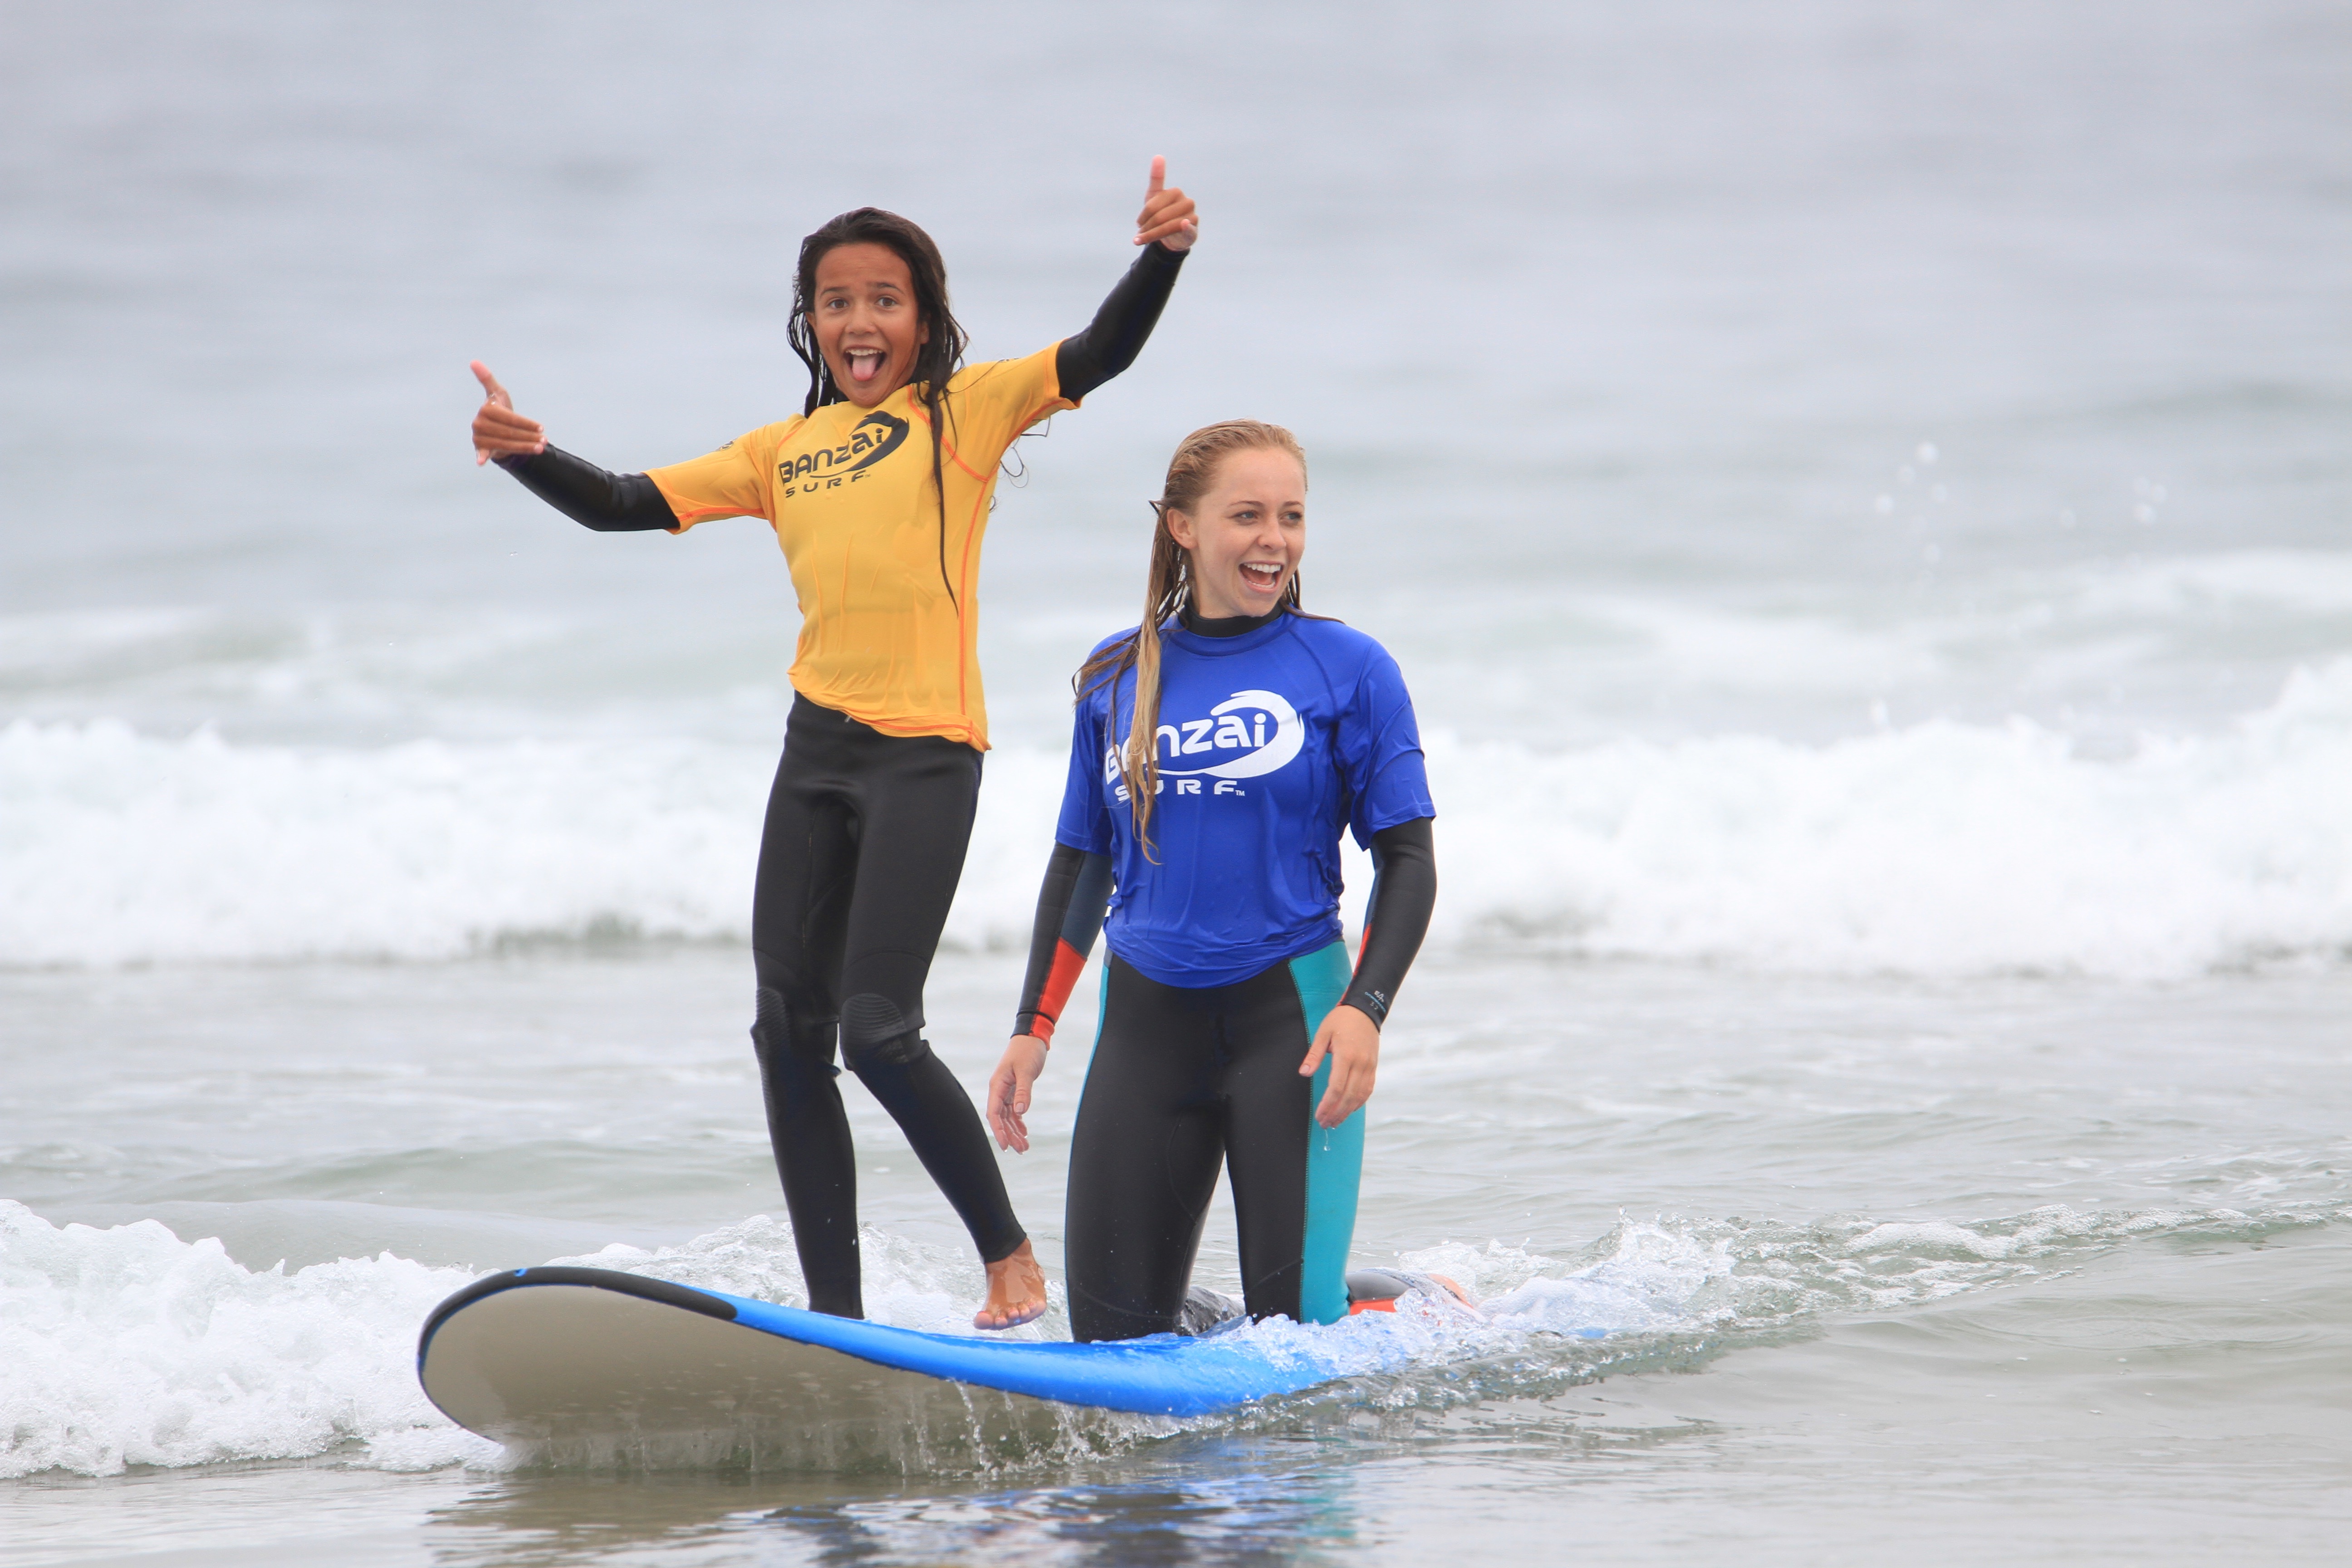 Surf Lessons at Banzai Surf School: Newport Beach